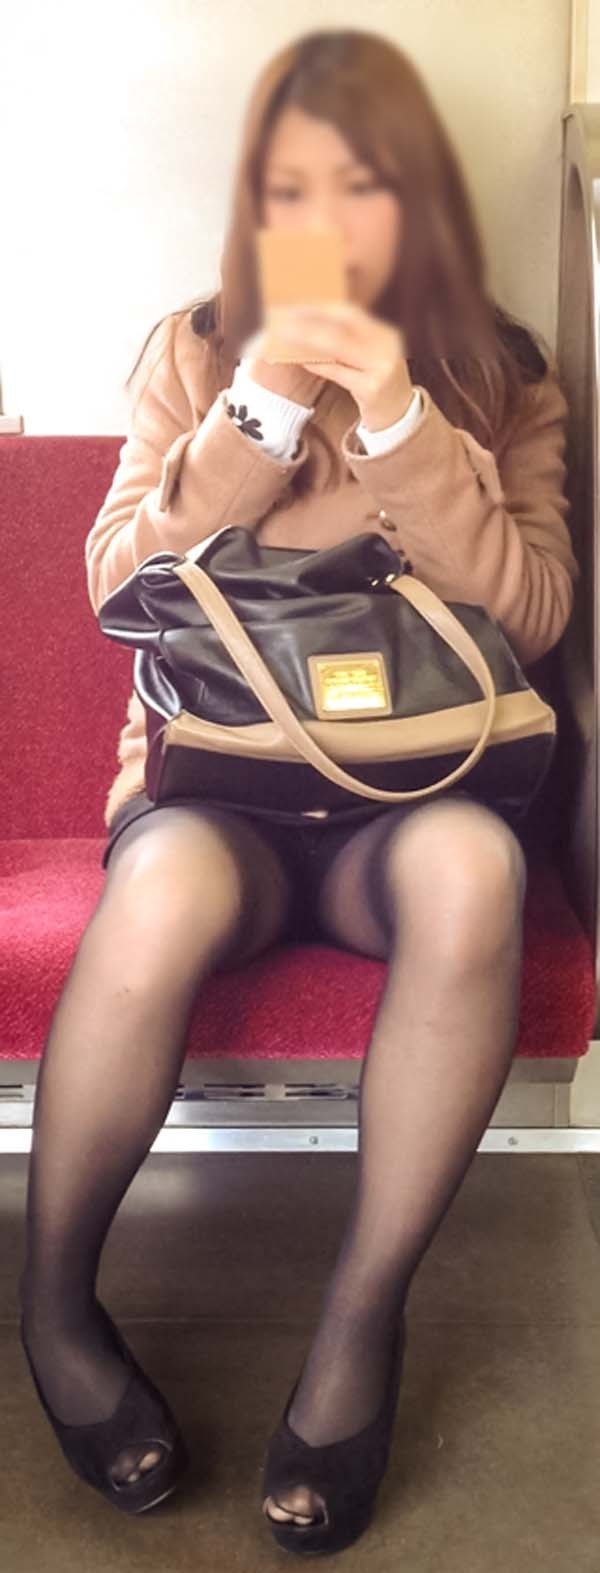 【電車内盗撮エロ画像】電車内でパンチラしている女子見つけたから撮ったったｗ 45